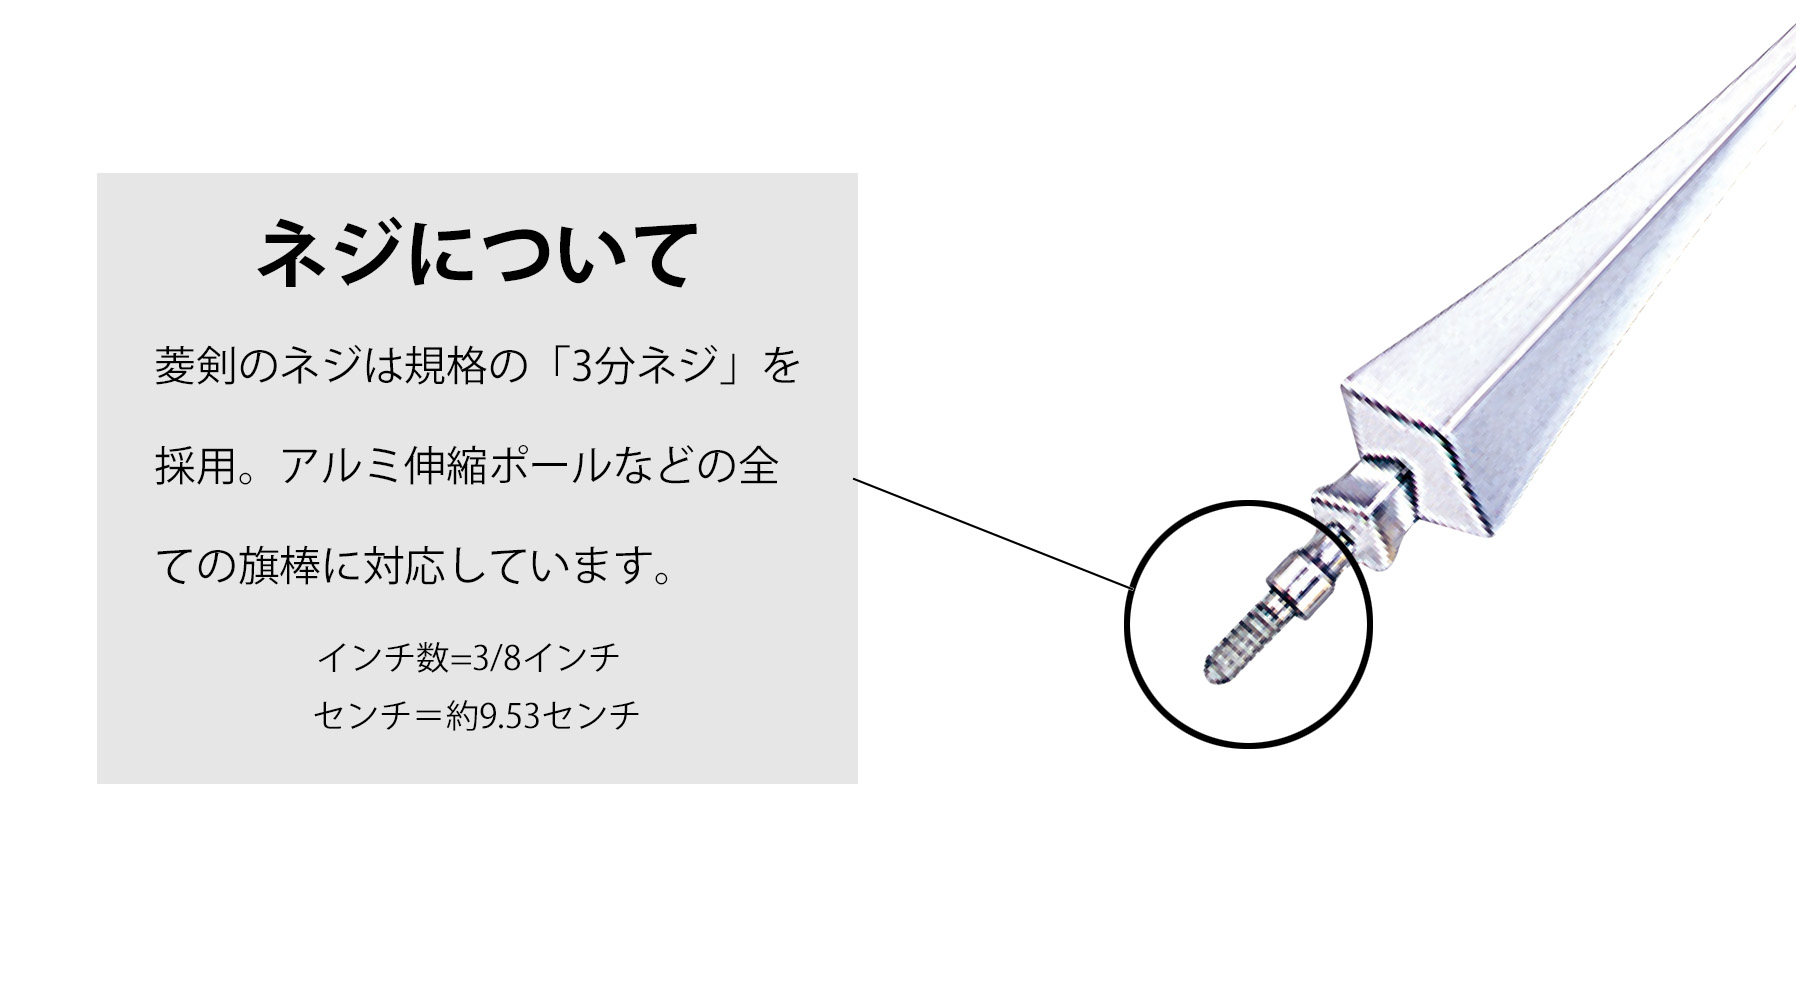 菱型剣（銀/アルミダイキャスト製）のネジサイズ